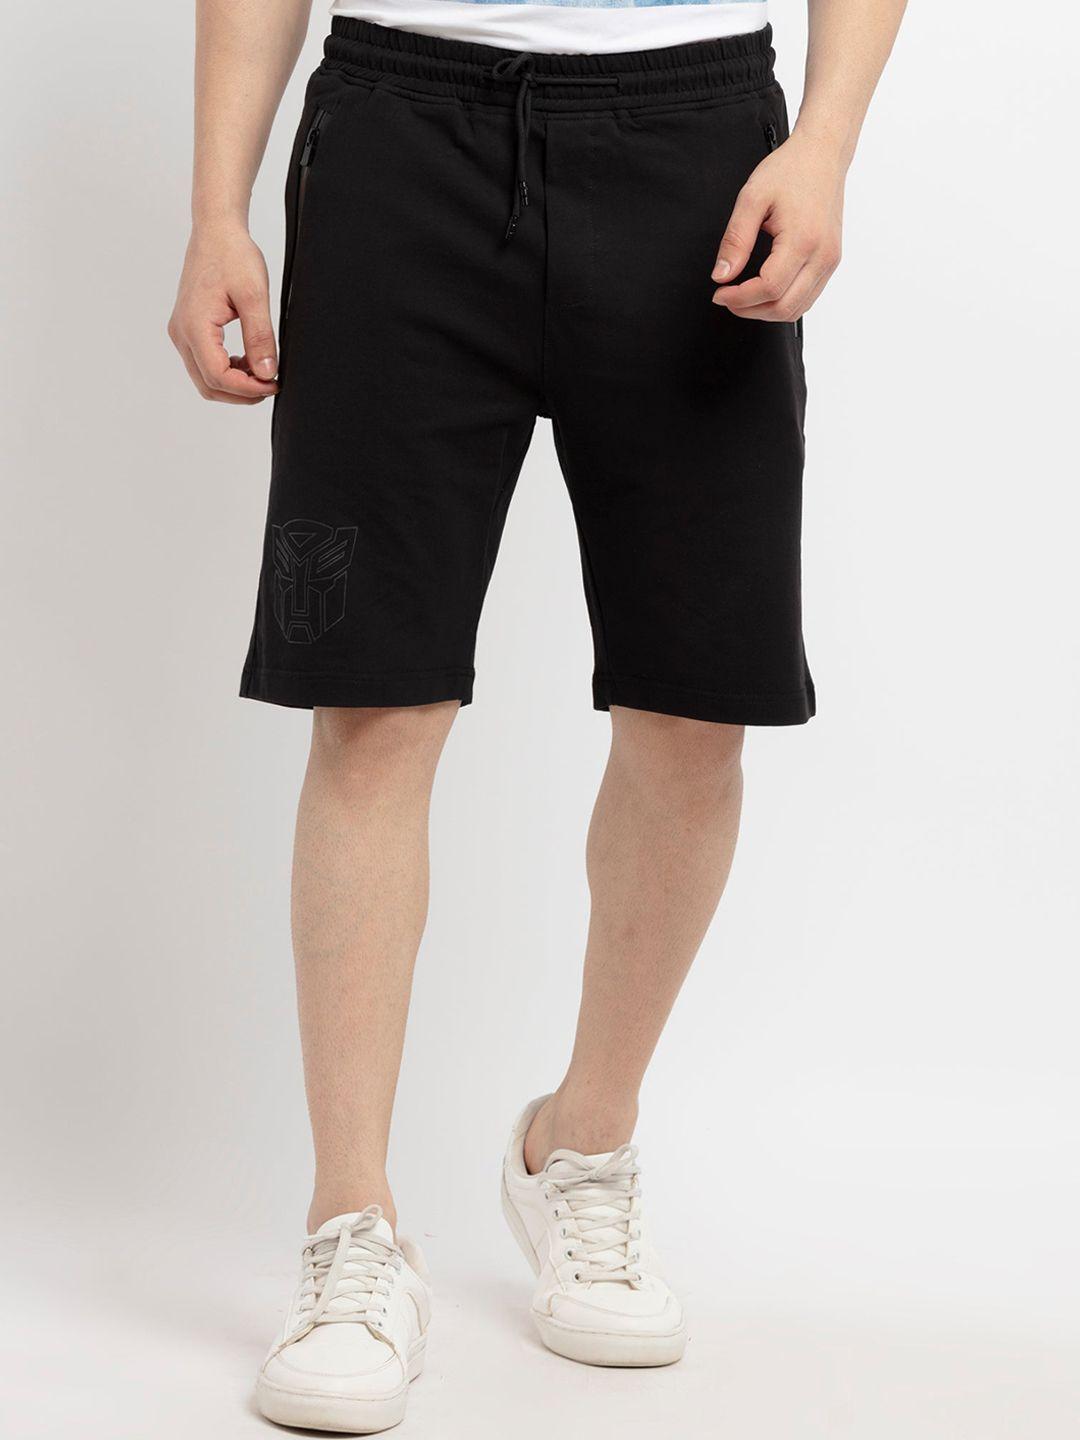 status quo men black solid cotton shorts